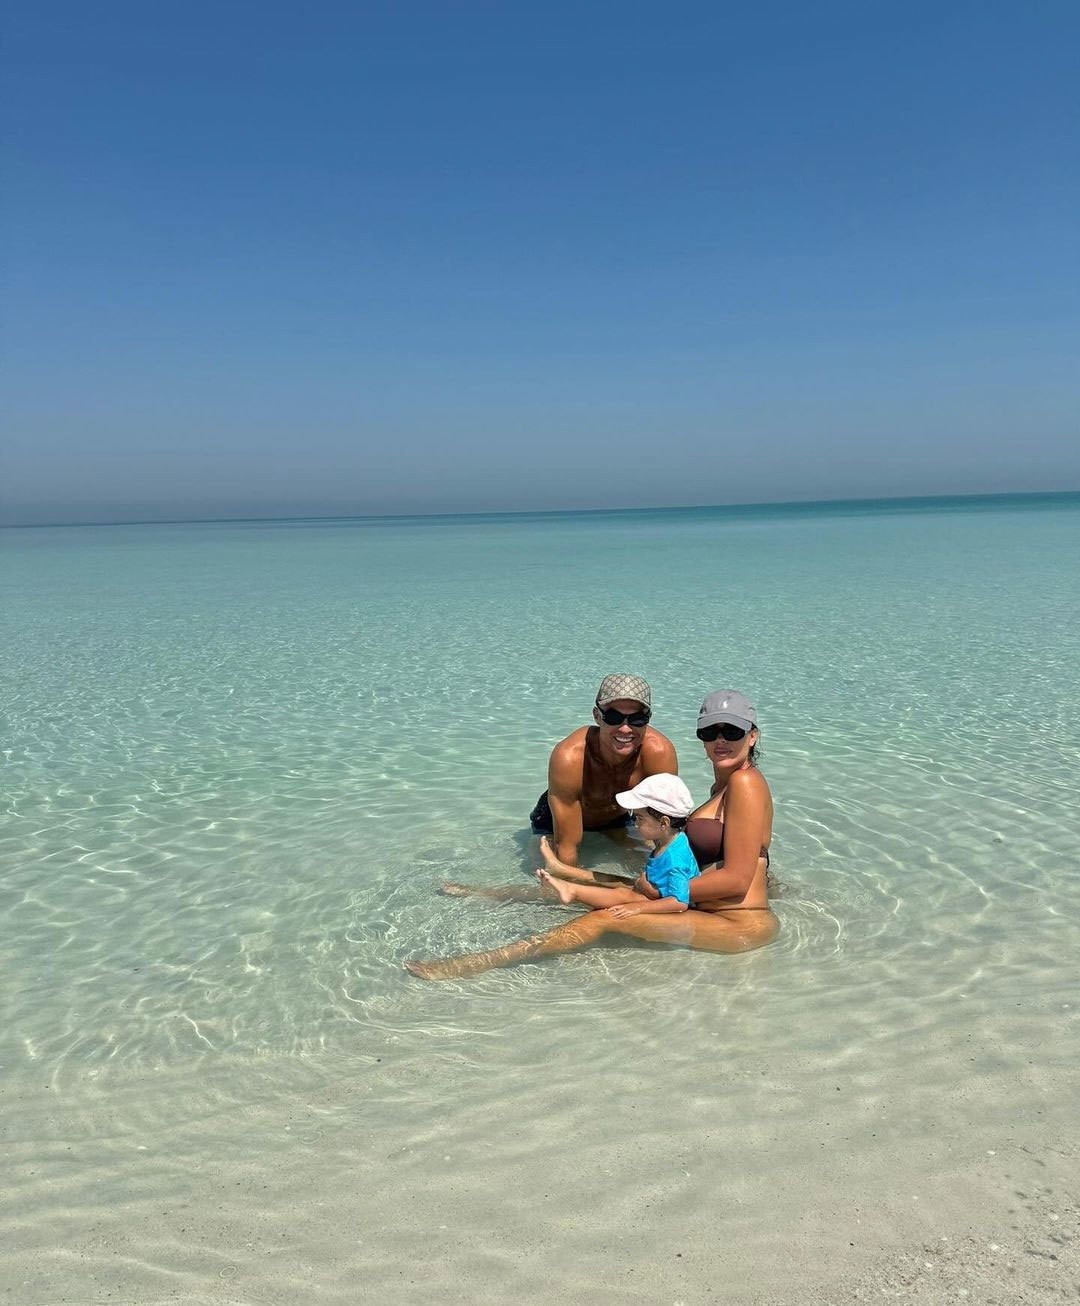 Siêu sao Ronaldo và bạn gái đồng loạt khoe ảnh gia đình nghỉ dưỡng ở resort xa hoa tại Biển Đỏ